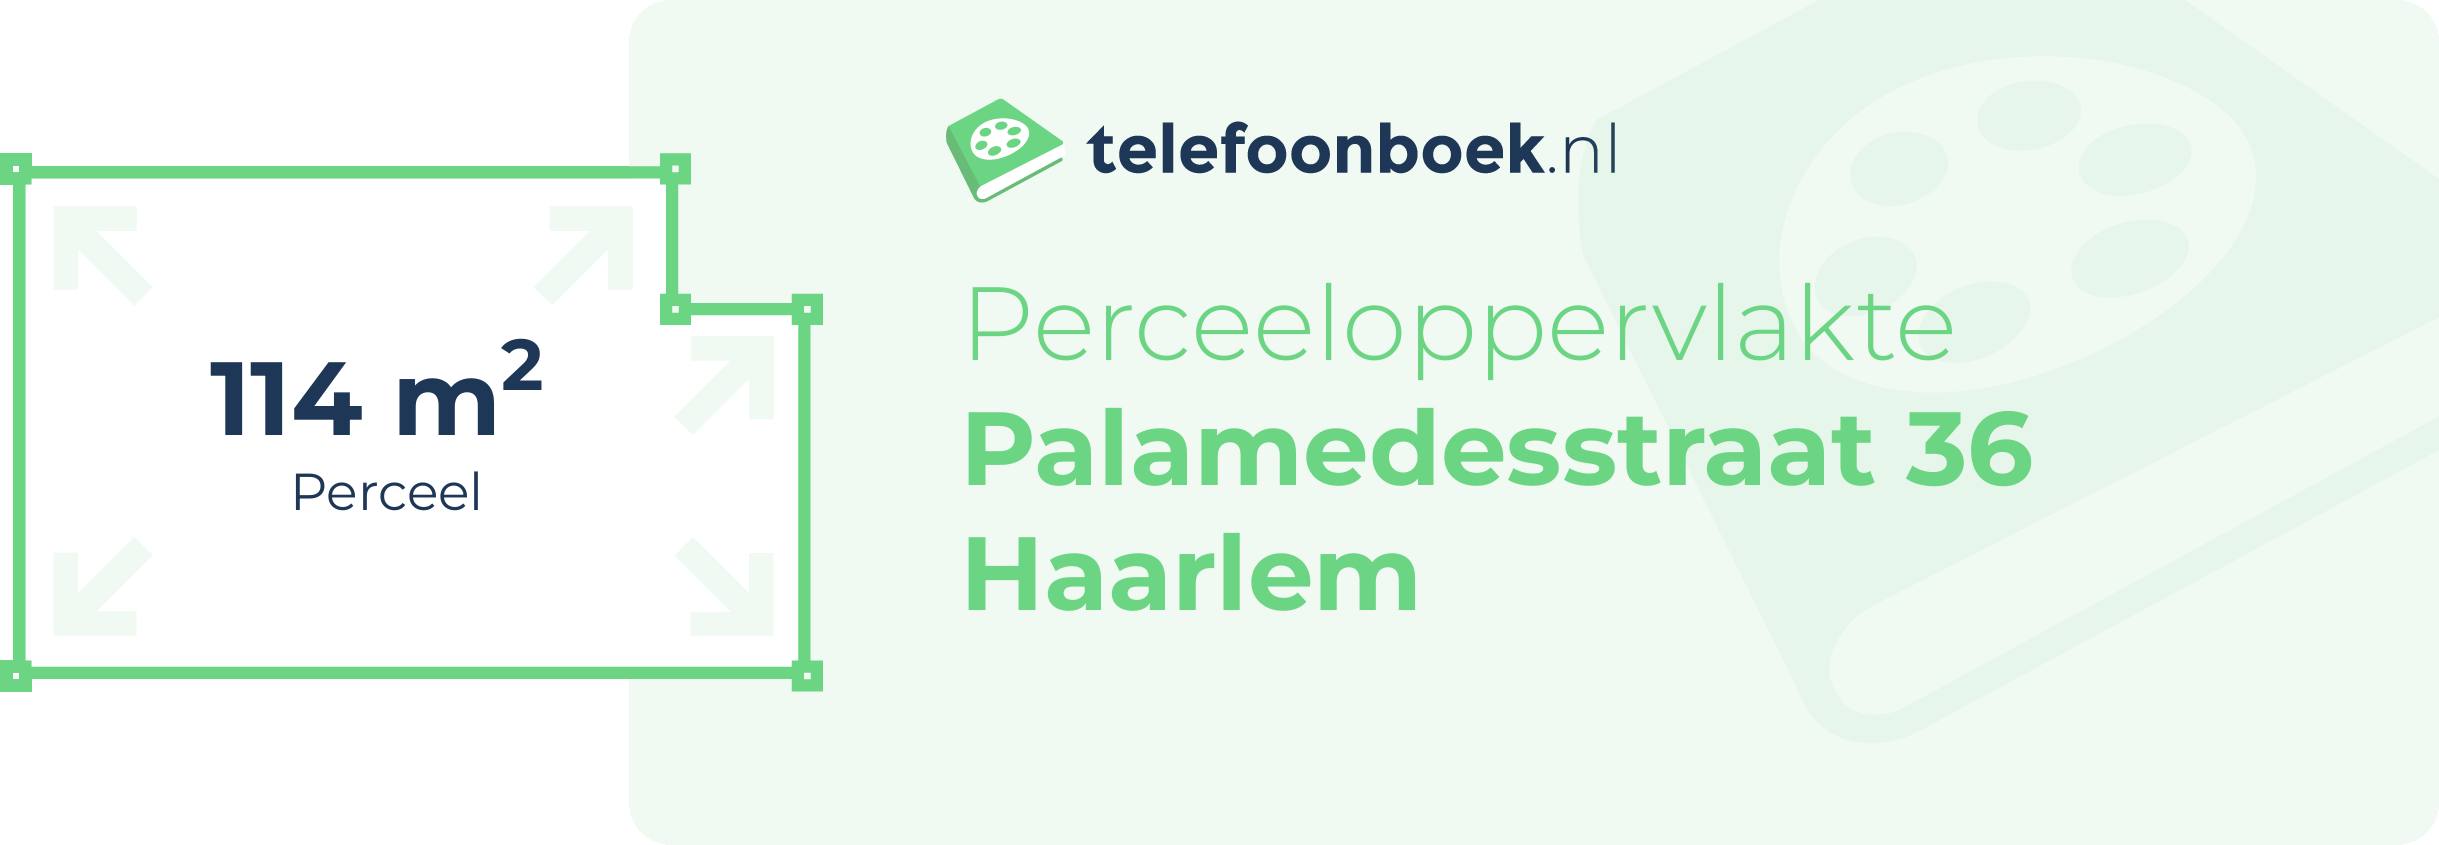 Perceeloppervlakte Palamedesstraat 36 Haarlem